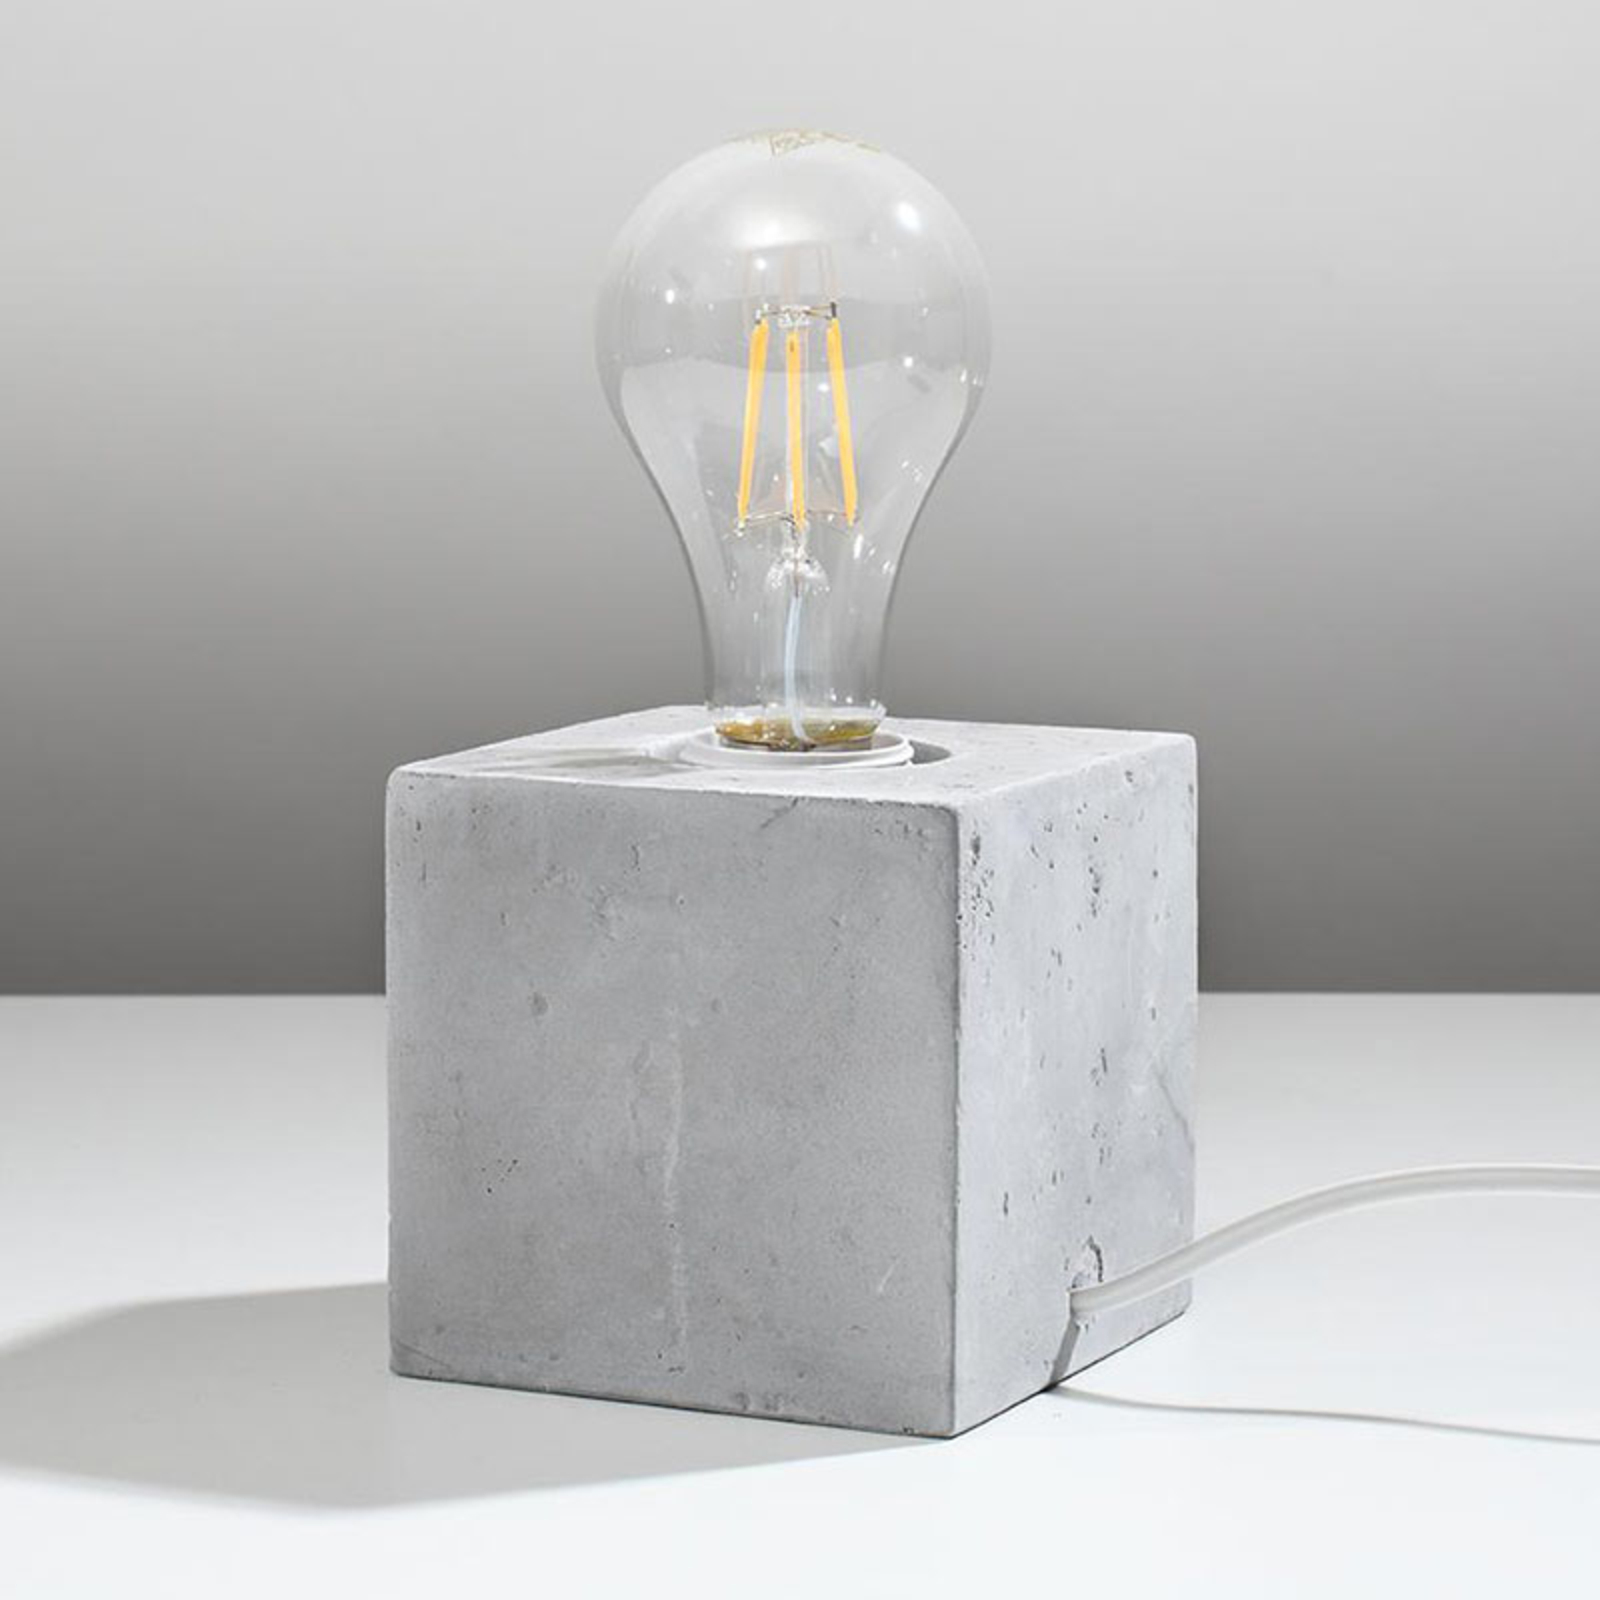 Akira asztali lámpa betonból készült kocka alakban